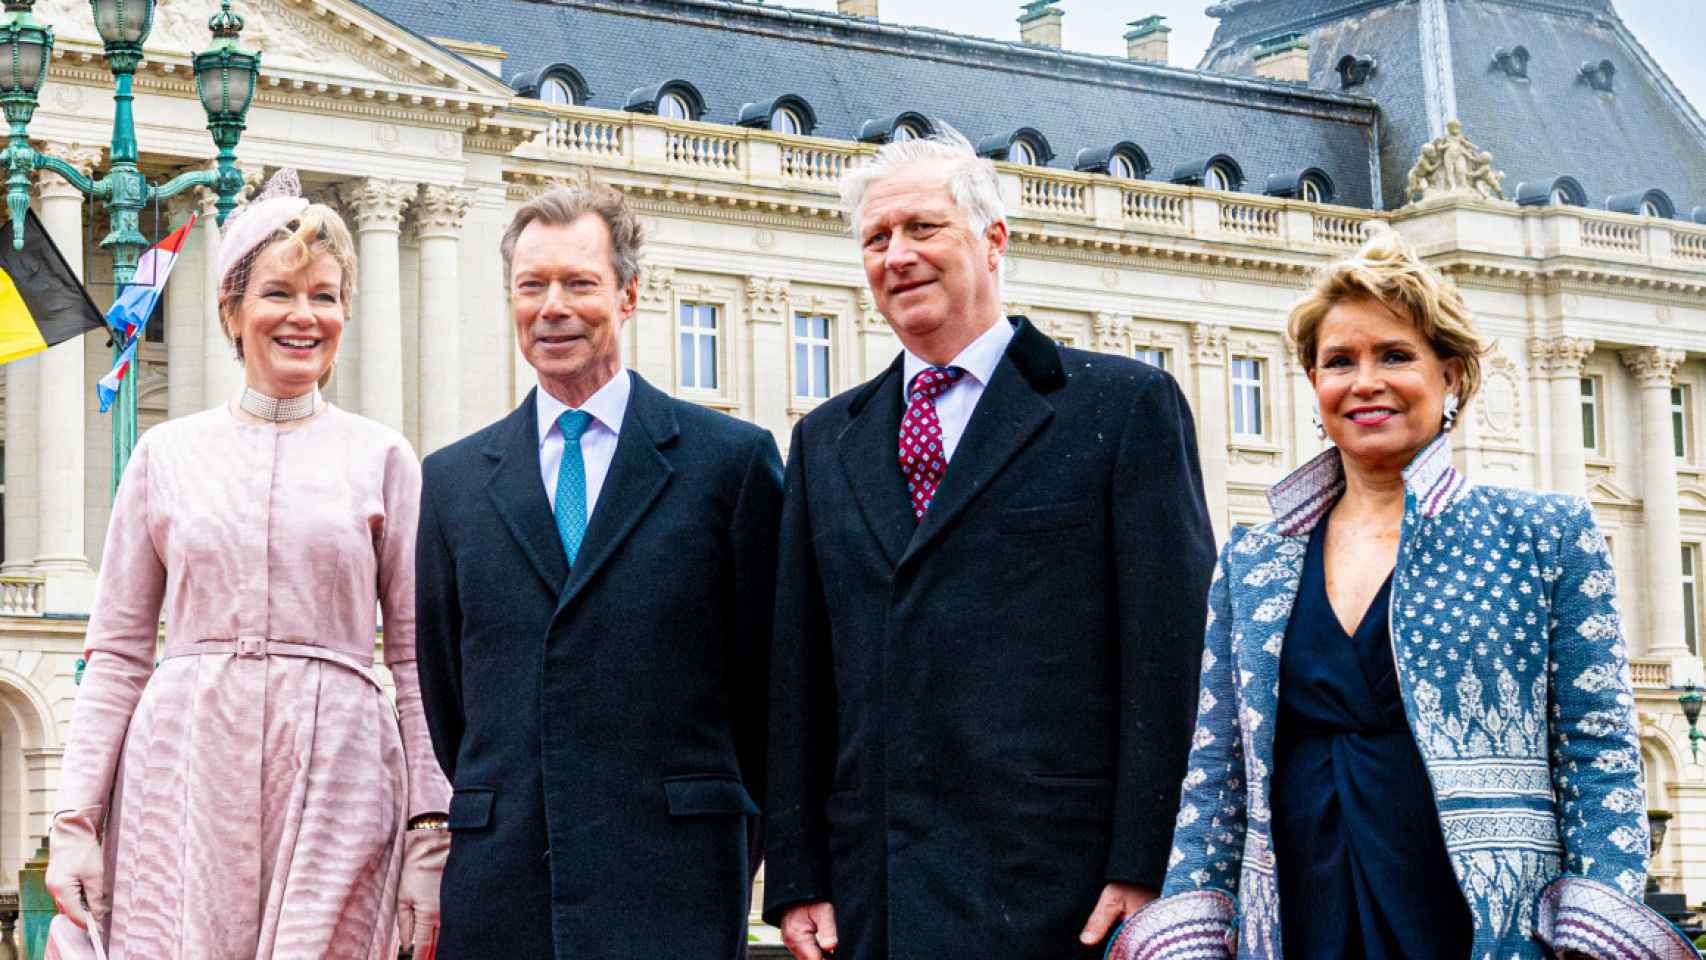 los looks opuestos de la reina matilde de bélgica y la gran duquesa de luxemburgo en bruselas: visita de estado